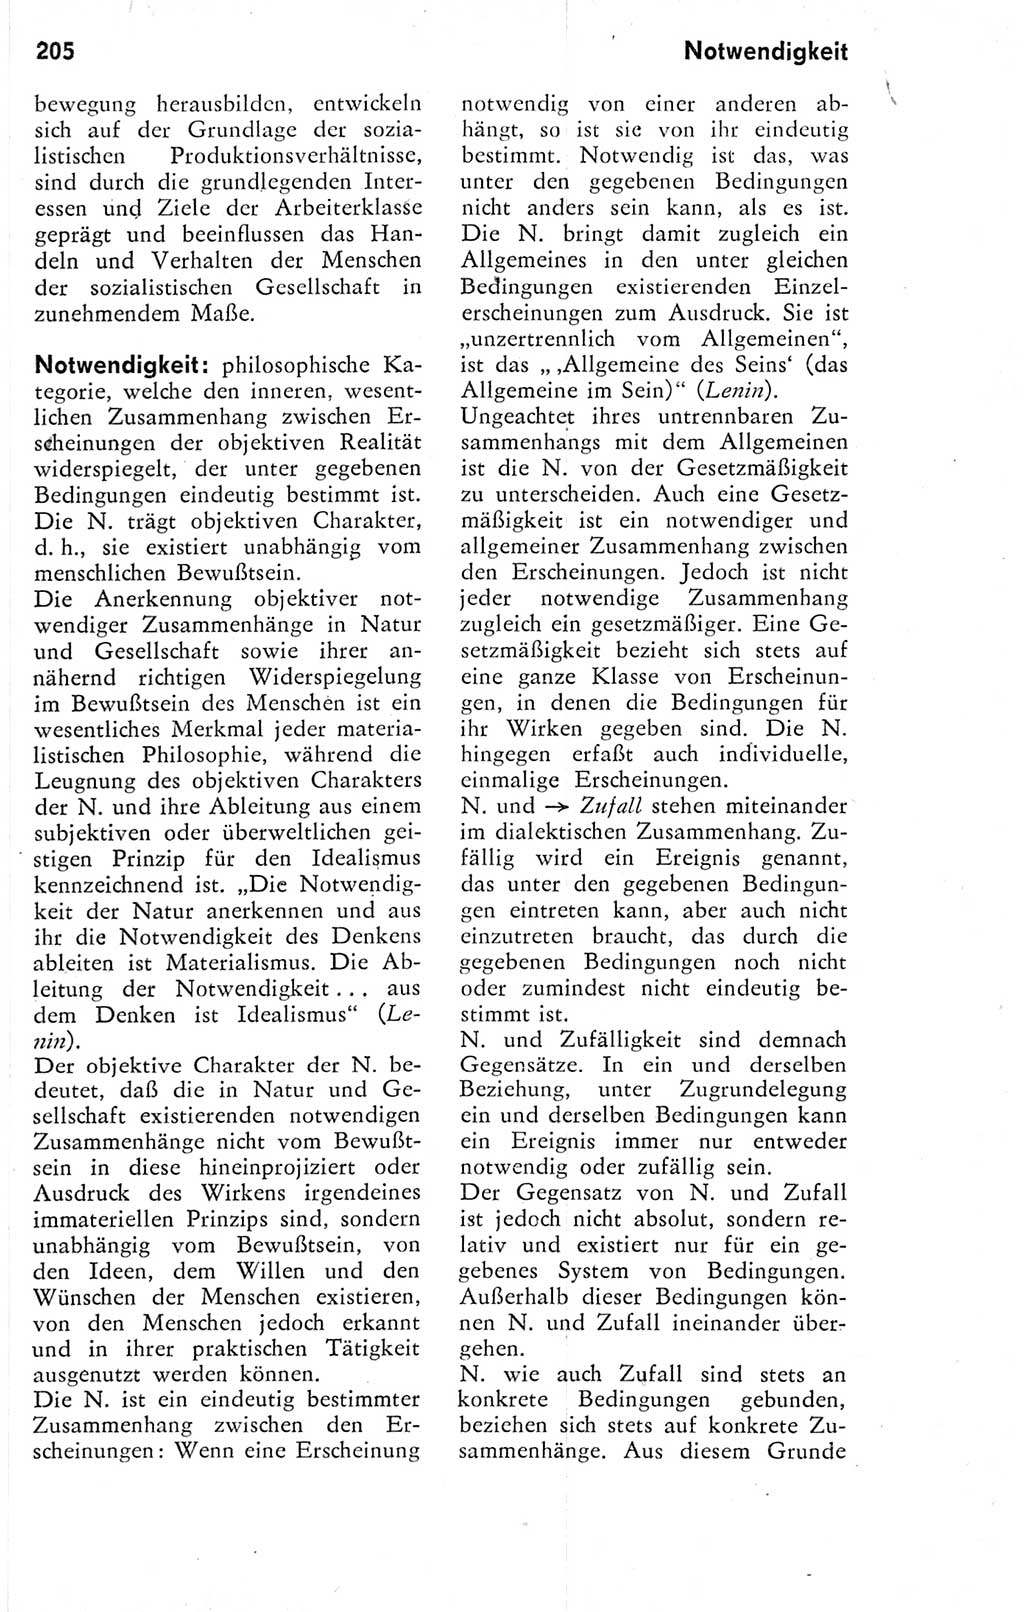 Kleines Wörterbuch der marxistisch-leninistischen Philosophie [Deutsche Demokratische Republik (DDR)] 1974, Seite 205 (Kl. Wb. ML Phil. DDR 1974, S. 205)